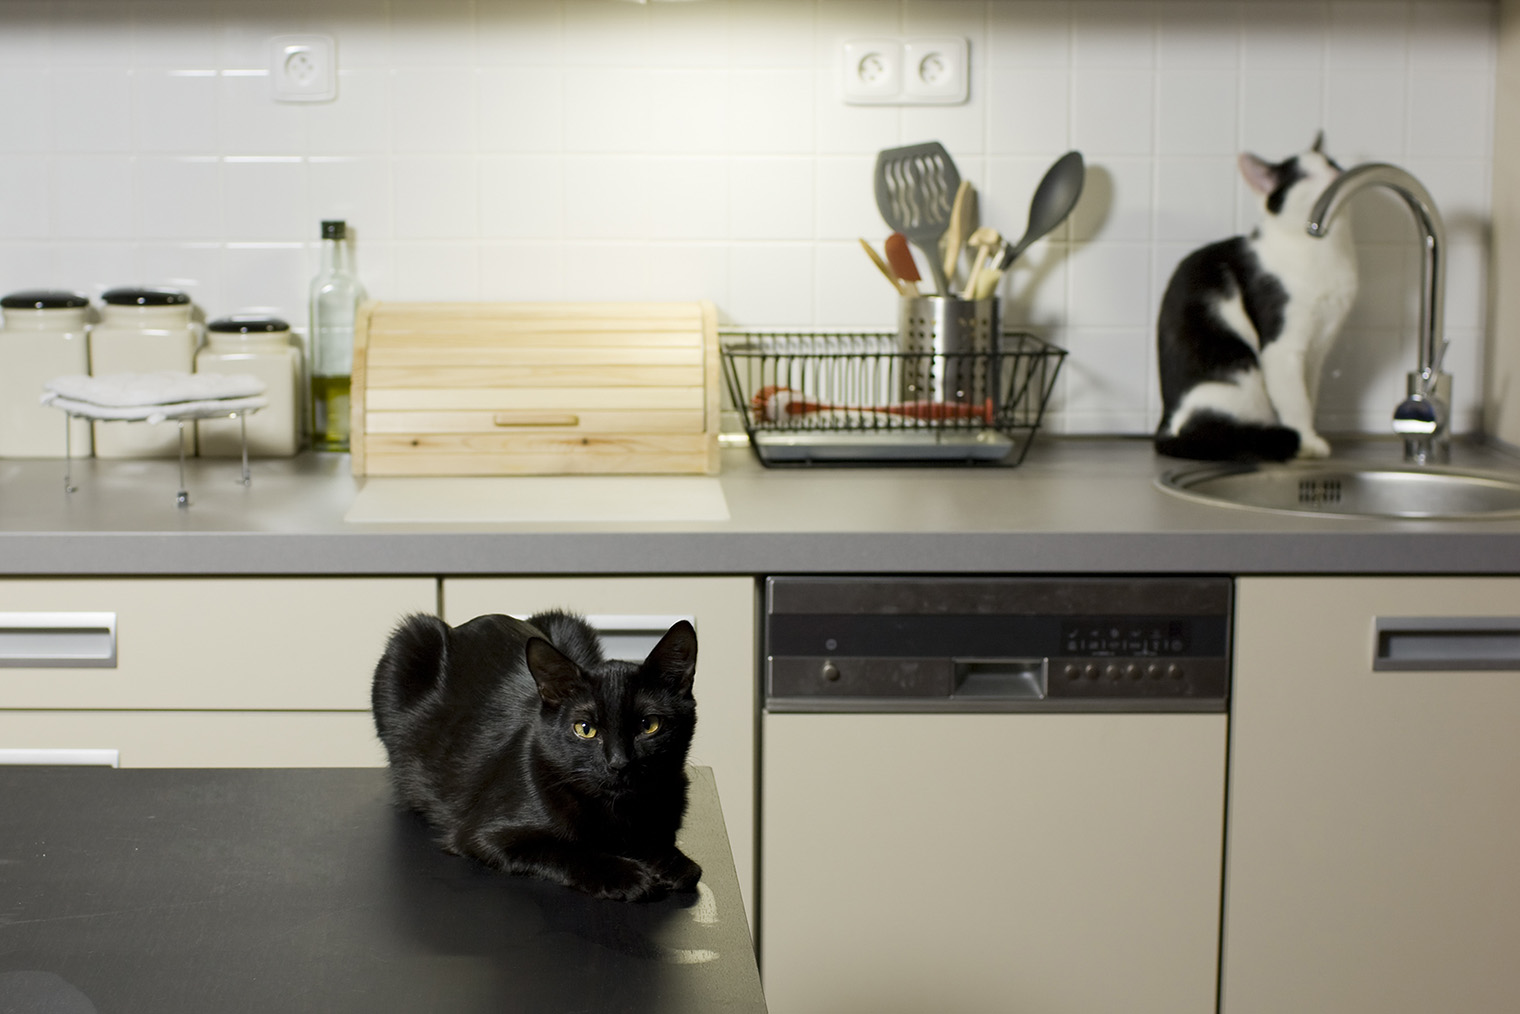 Пример главной фотографии с кухней. Кот привлекает внимание — скорее всего, это объявление запомнится. Источник: koshka.top